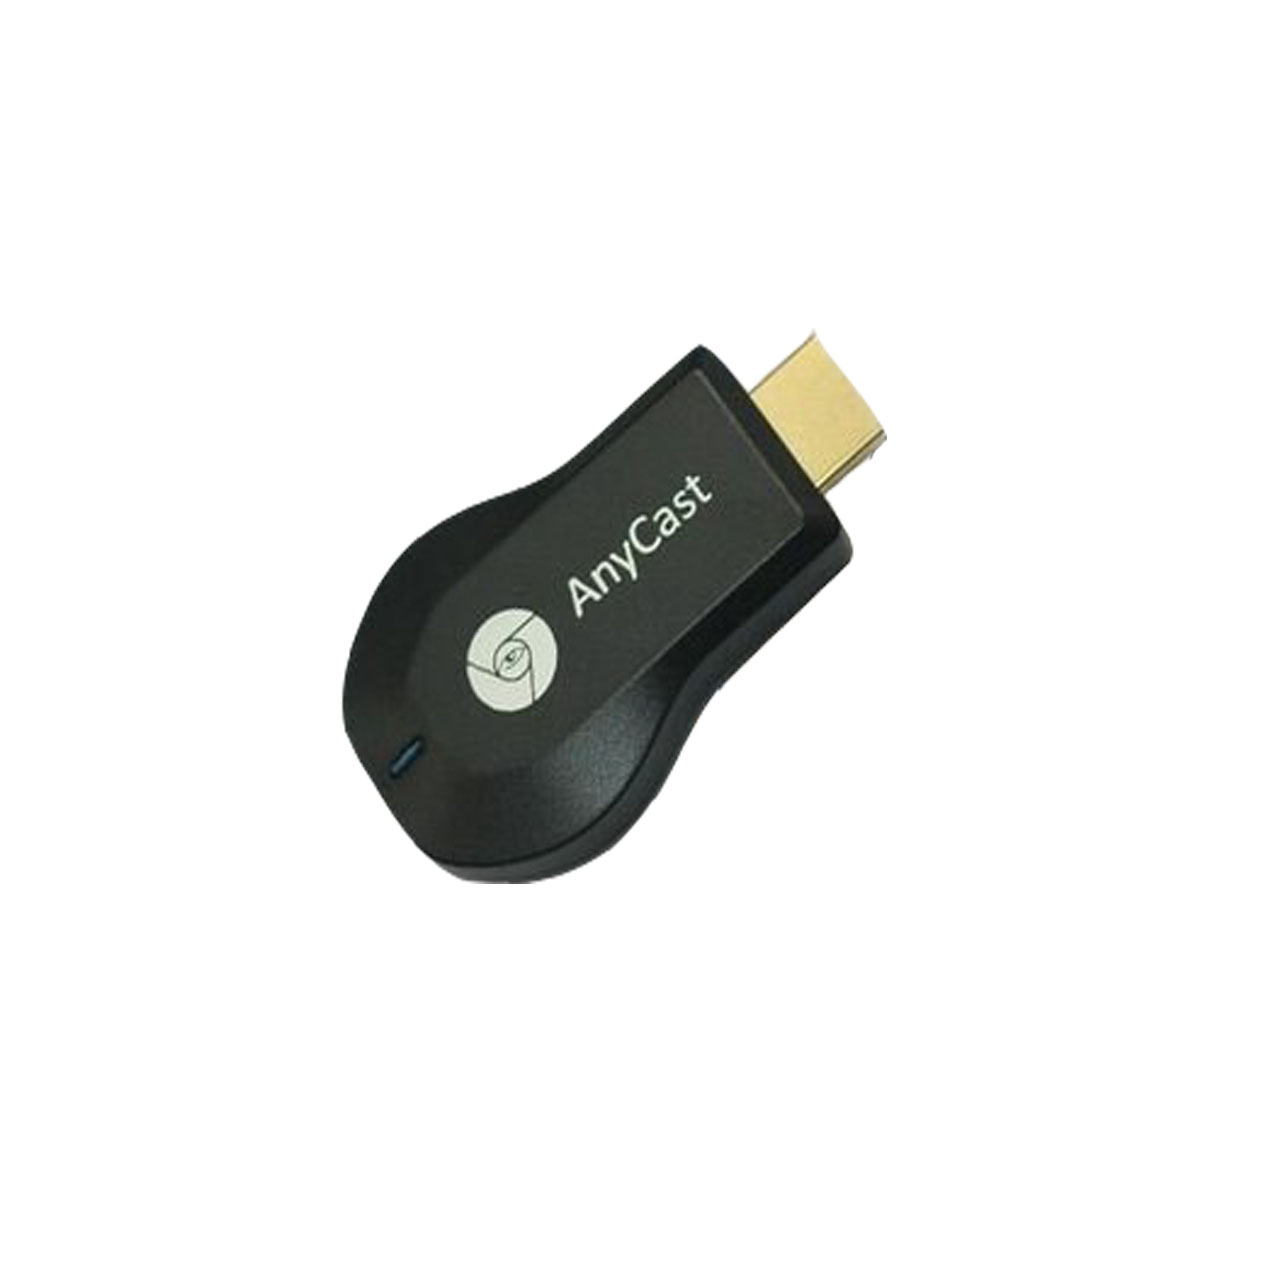  دانگل   HDMI  مدل  any cast m9  9118